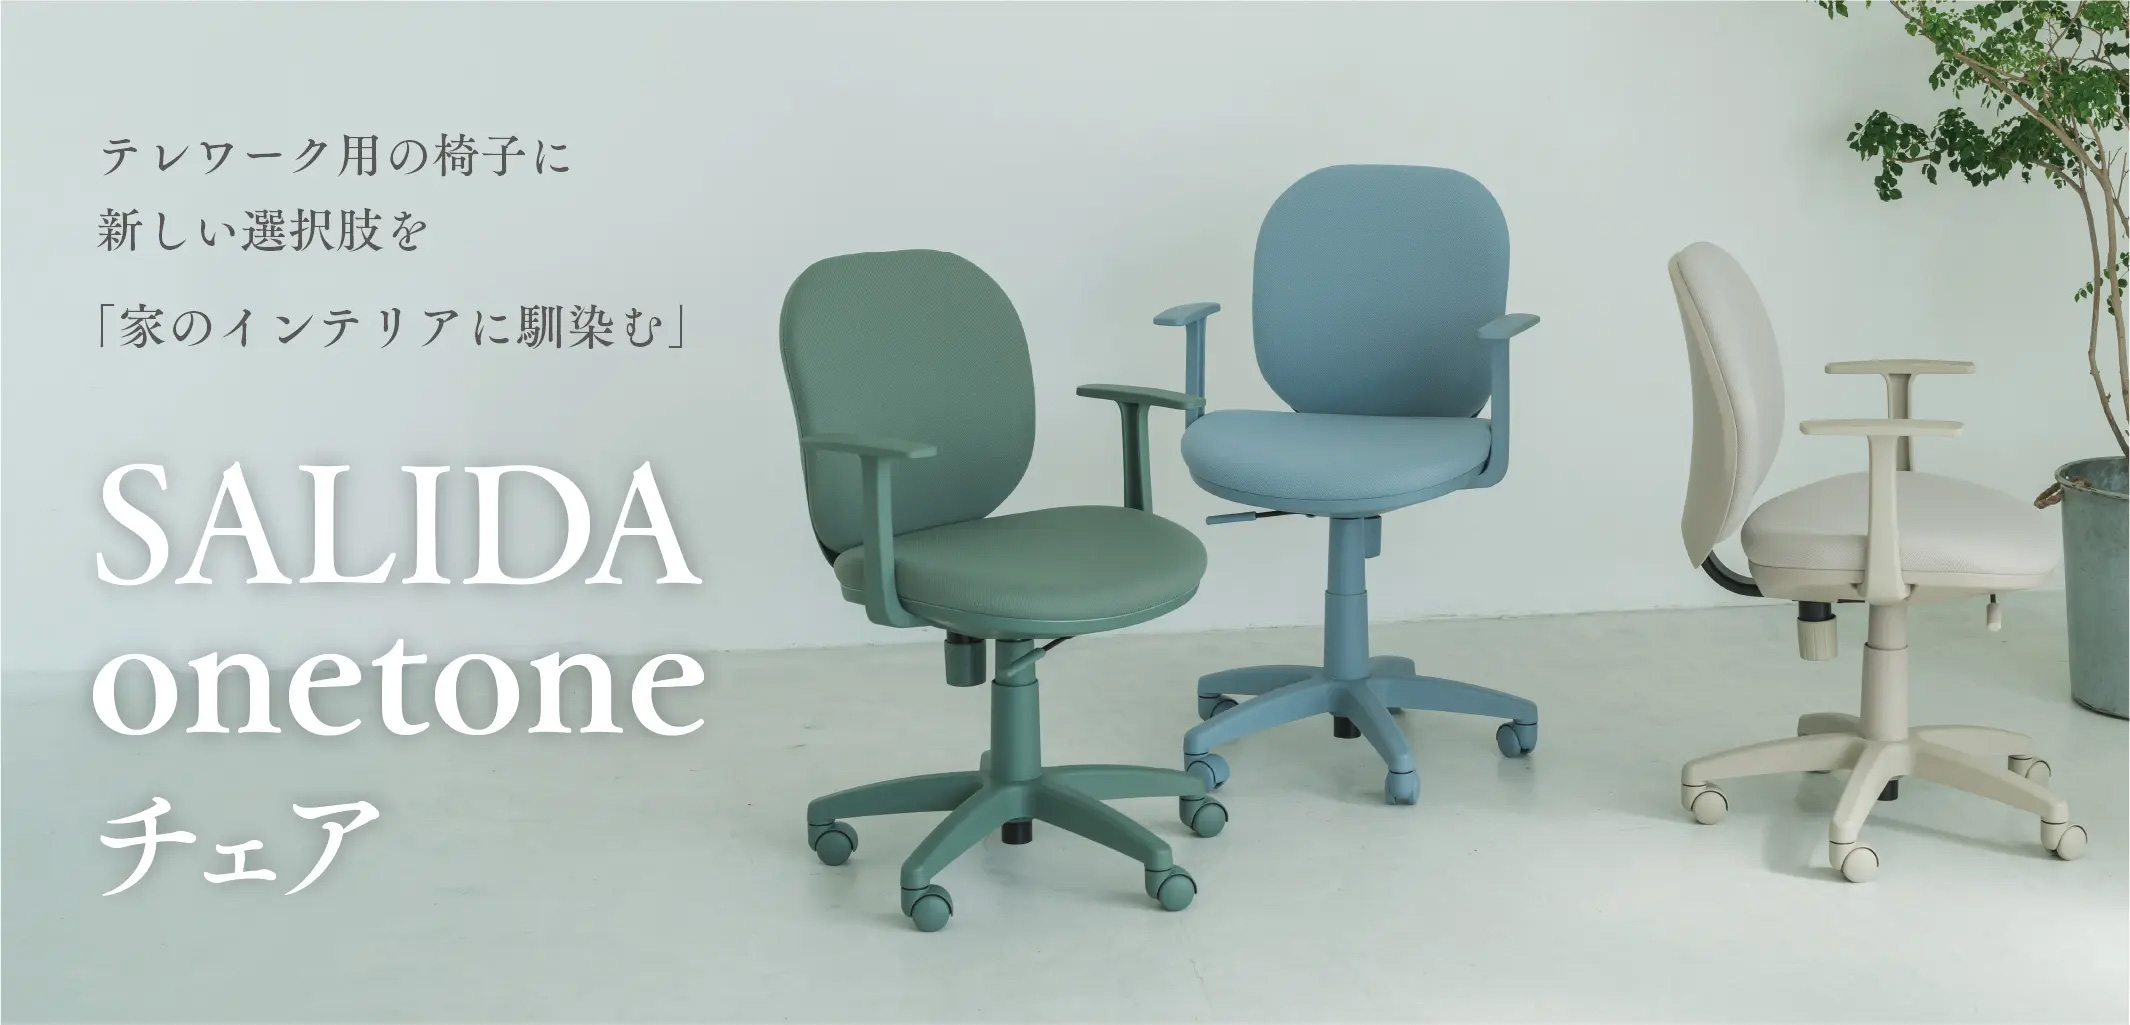 テレワーク用の椅子に新しい選択肢を「家のインテリアに馴染む」SALIDA onetoneチェア